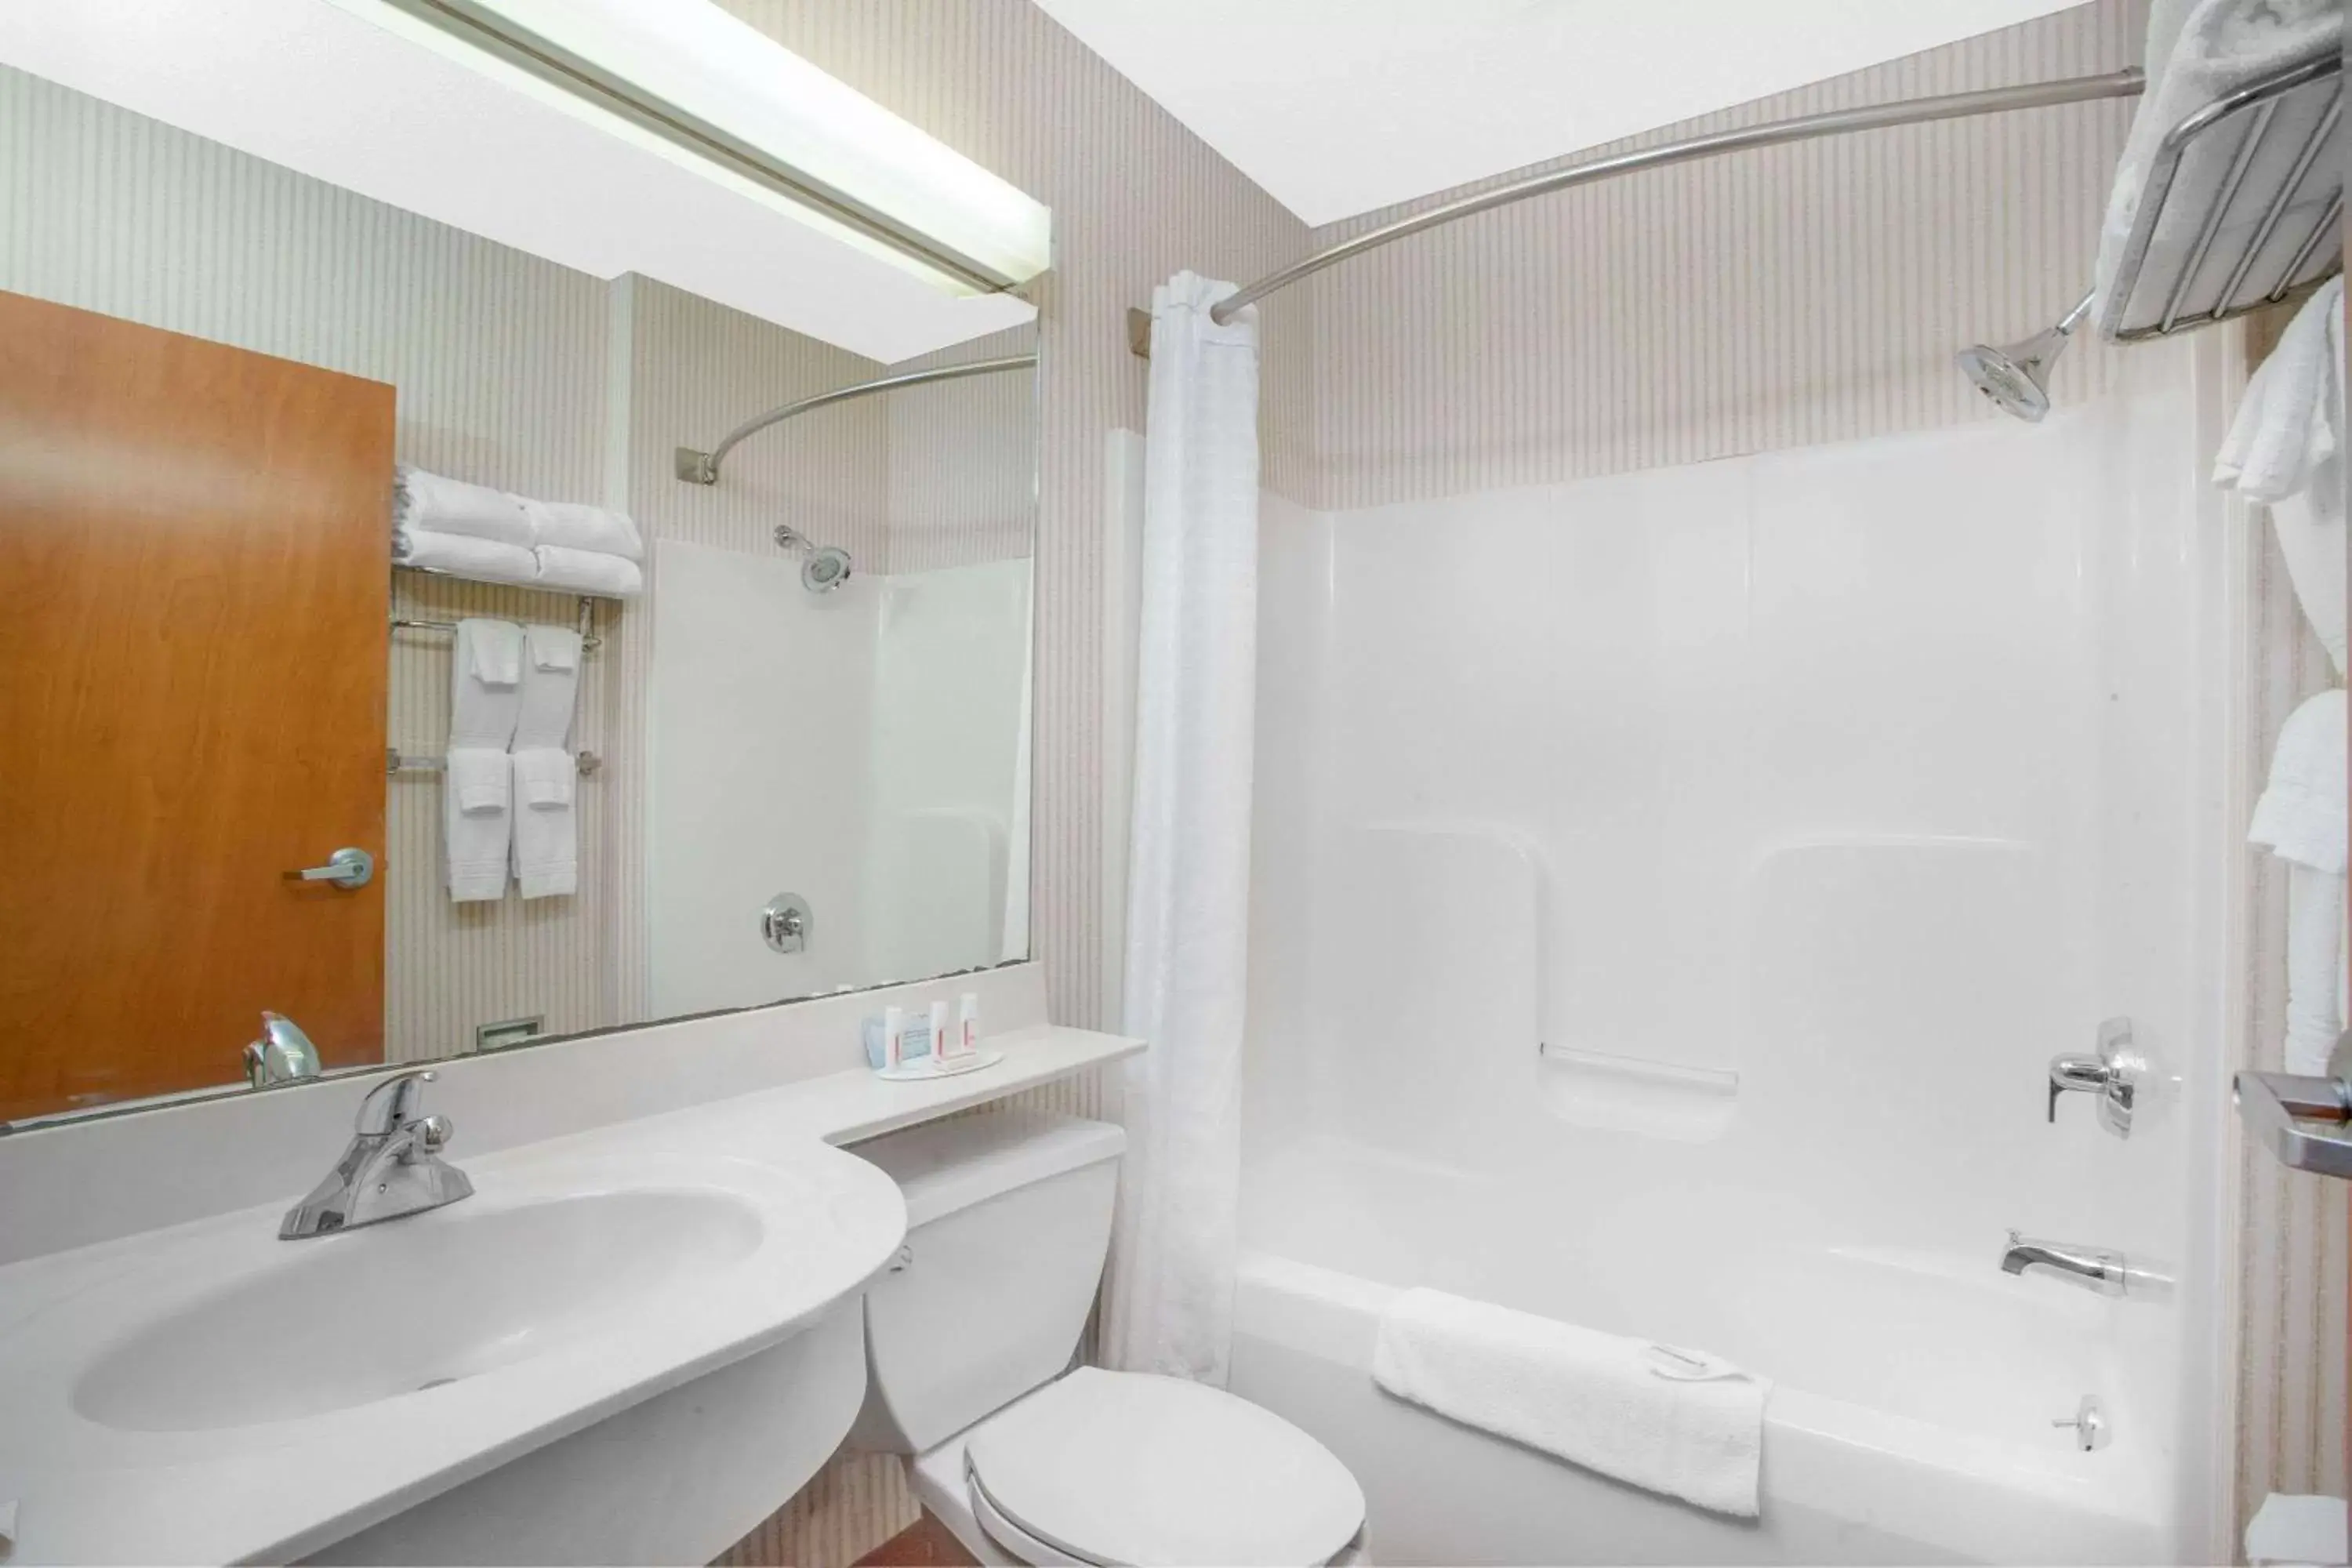 Bathroom in Microtel Inn & Suites Springville